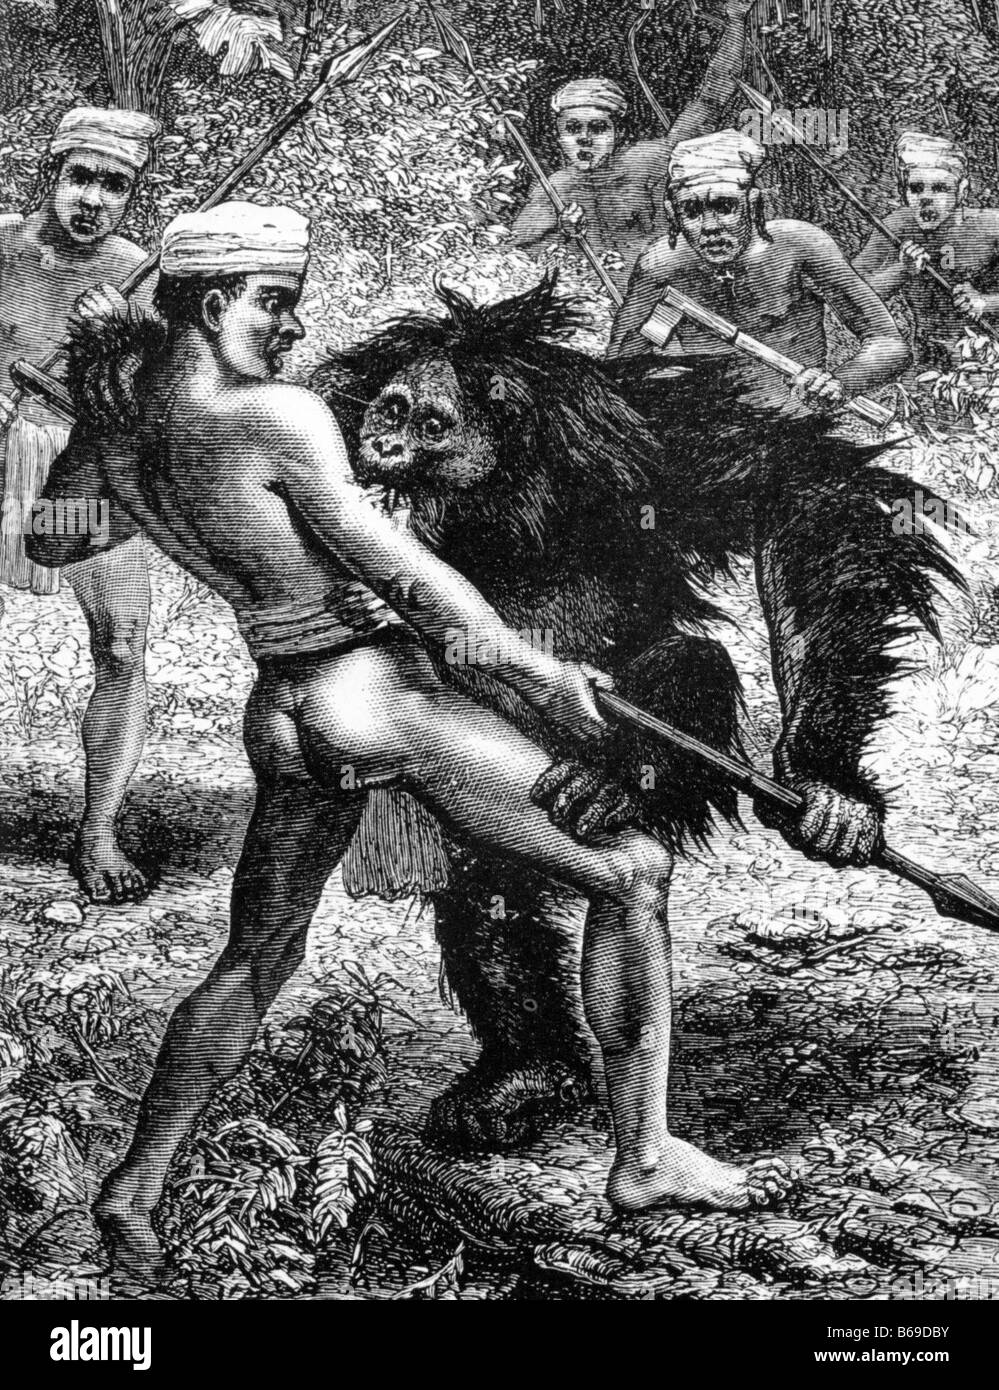 L'archipel malais Illustration de Alfred Russel Wallace livre 1869 montrant des Dyaks Orang Outans chasse Banque D'Images